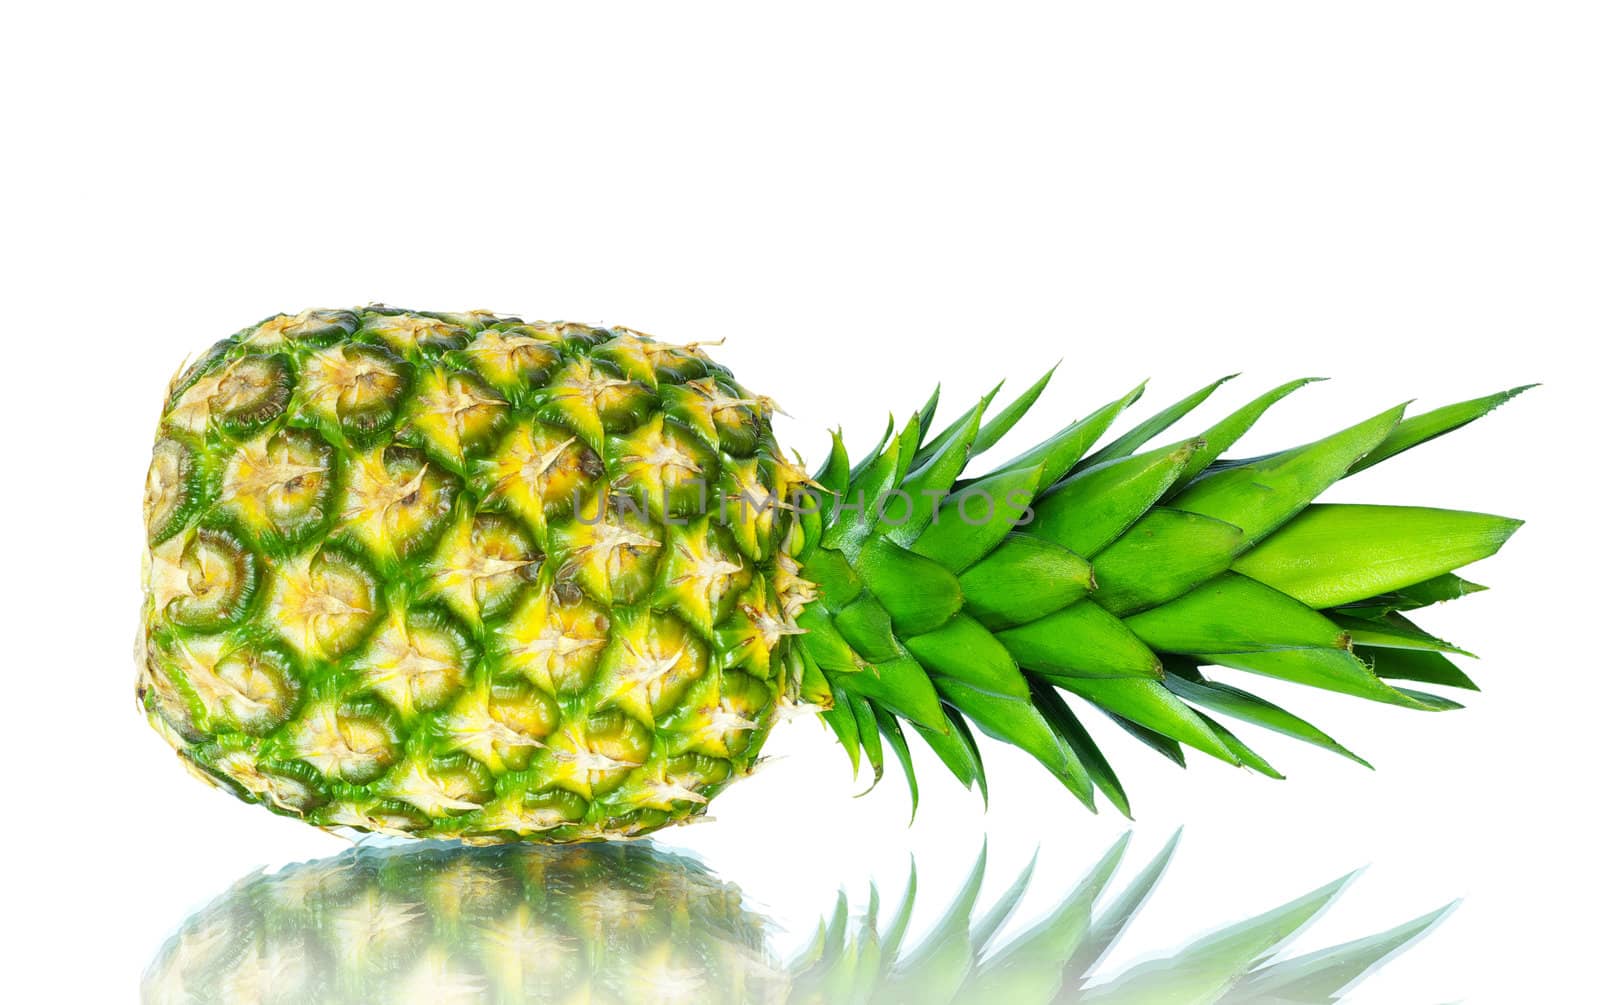  pineapple by Pakhnyushchyy